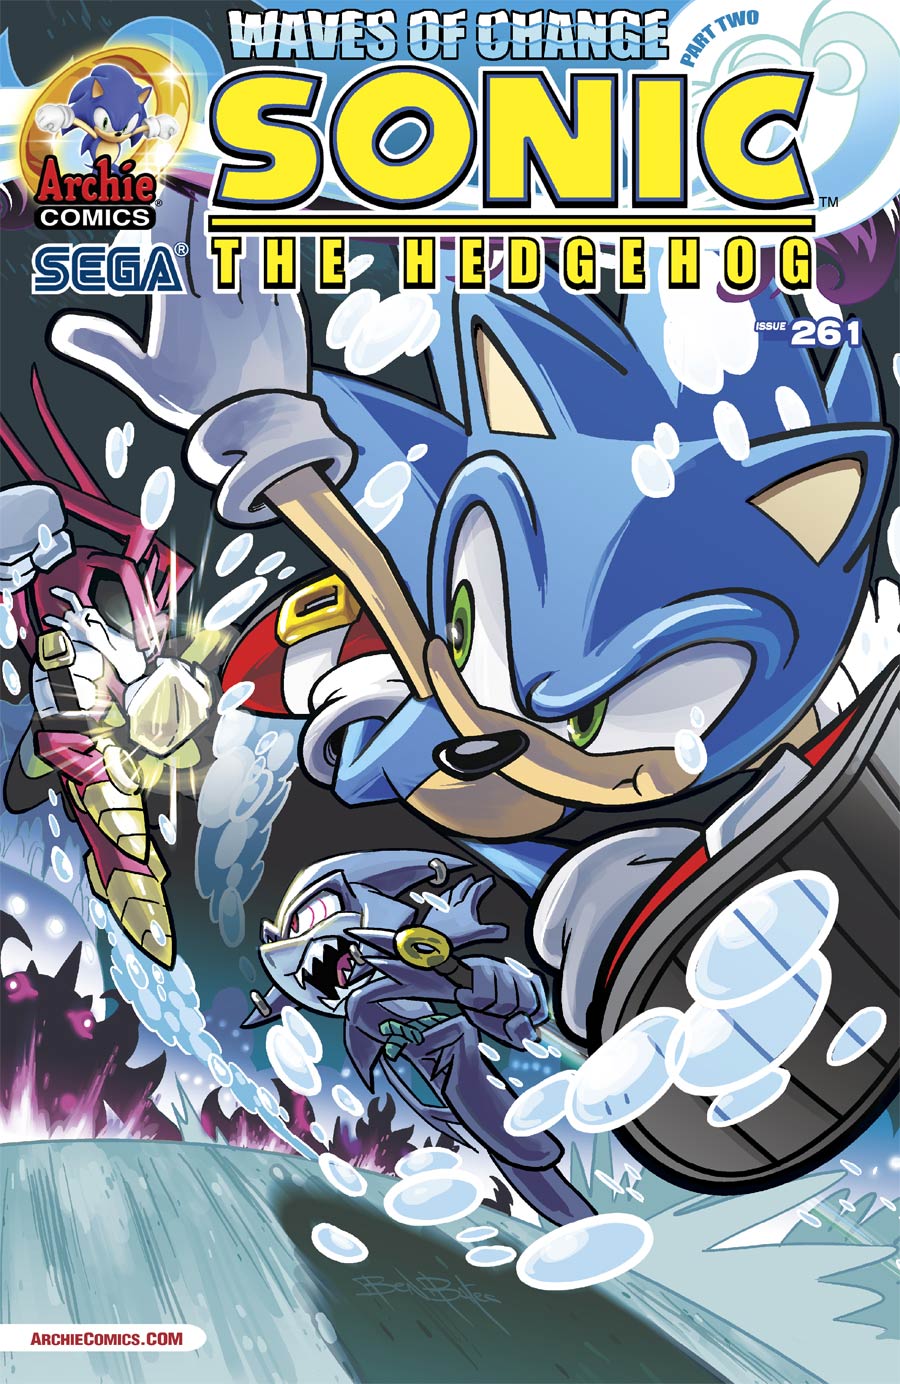 Sonic The Hedgehog Vol 2 #261 Cover A Regular Ben Bates Cover